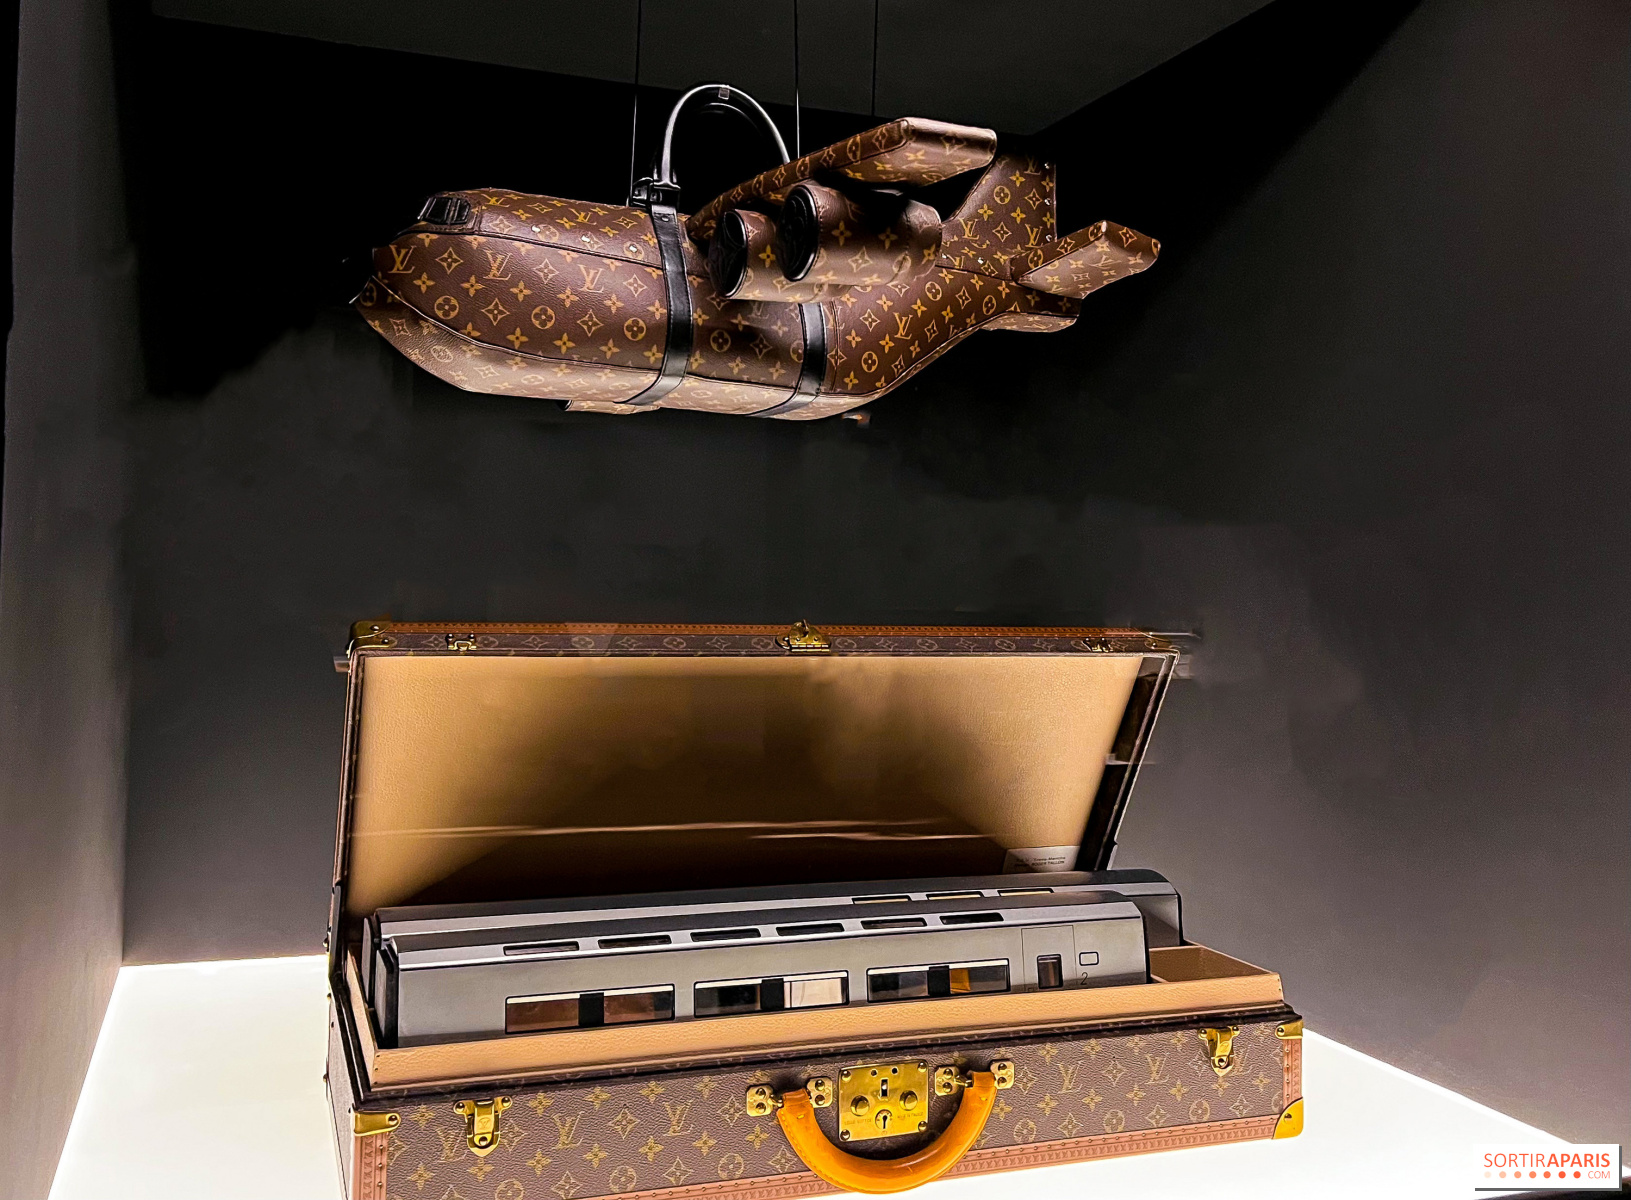 Louis Vuitton rend hommage à sa Malle Courrier dans une exposition inédite  et gratuite